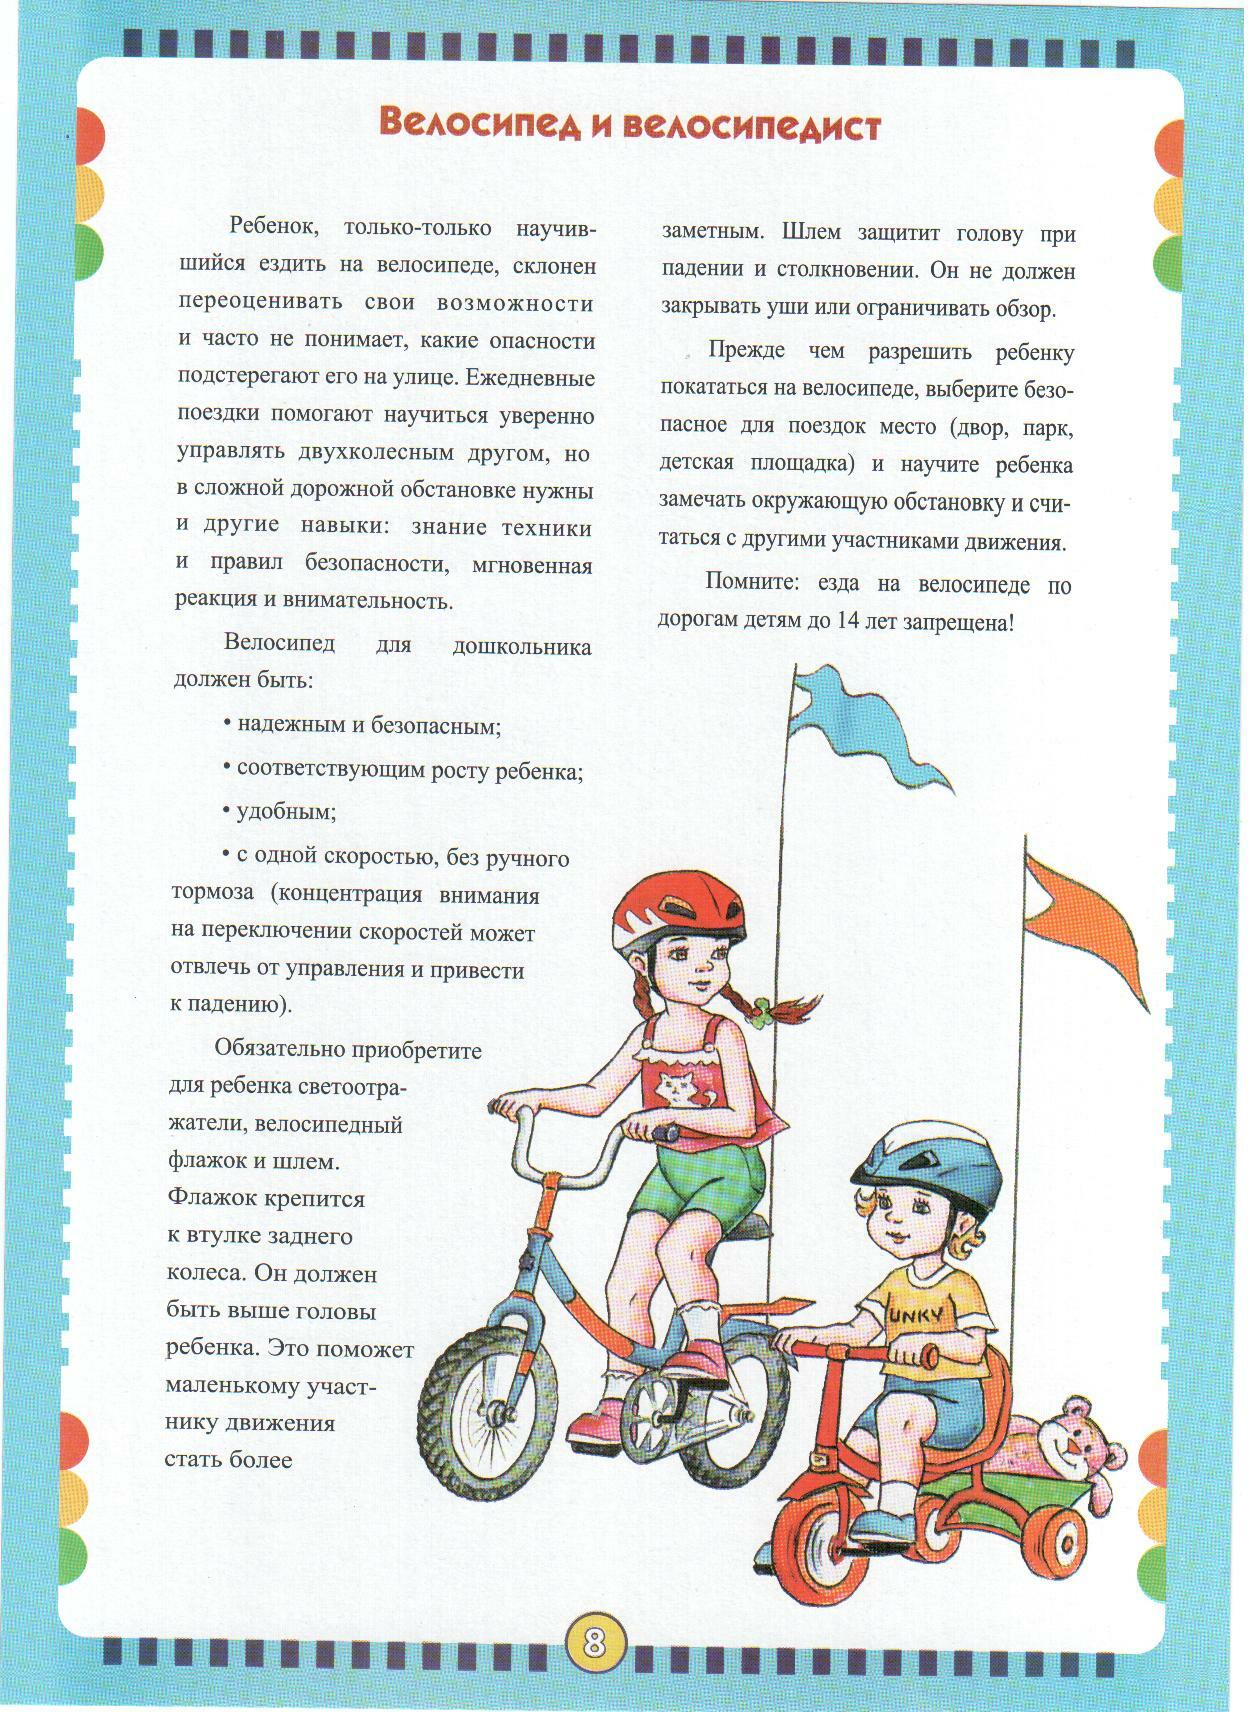 Велосипед найти слова. Памятка для родителей по ПДД велосипед для детей. Консультация для родителей безопасный велосипед. Консультация для родителей в детском саду правила езды на велосипеде. Консультация для родителей самокат и велосипеды.